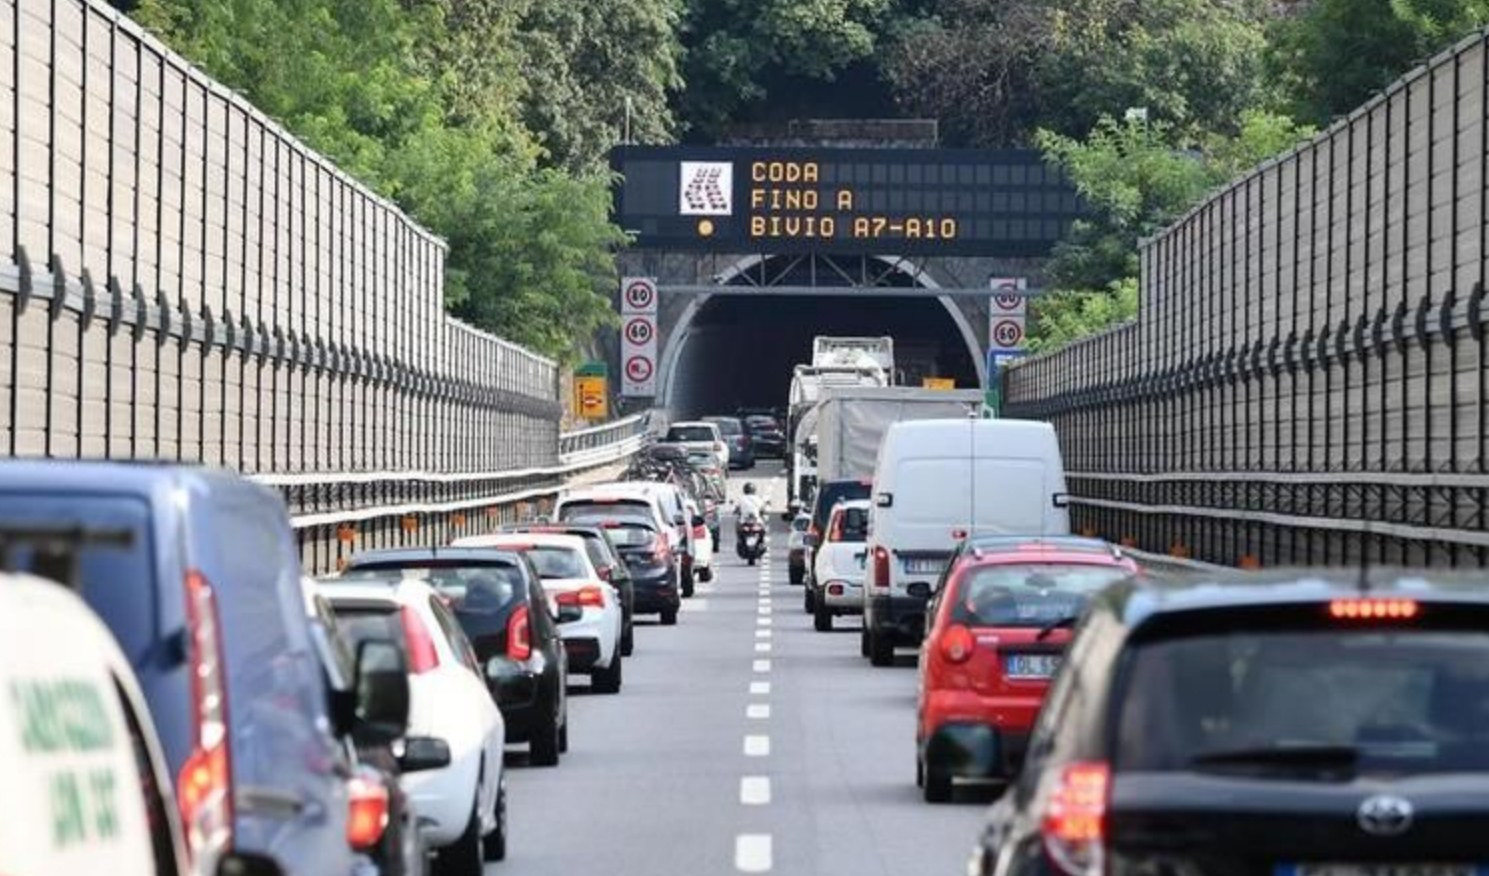 Caos autostrade, coda fino a 14 km in A10 verso Genova